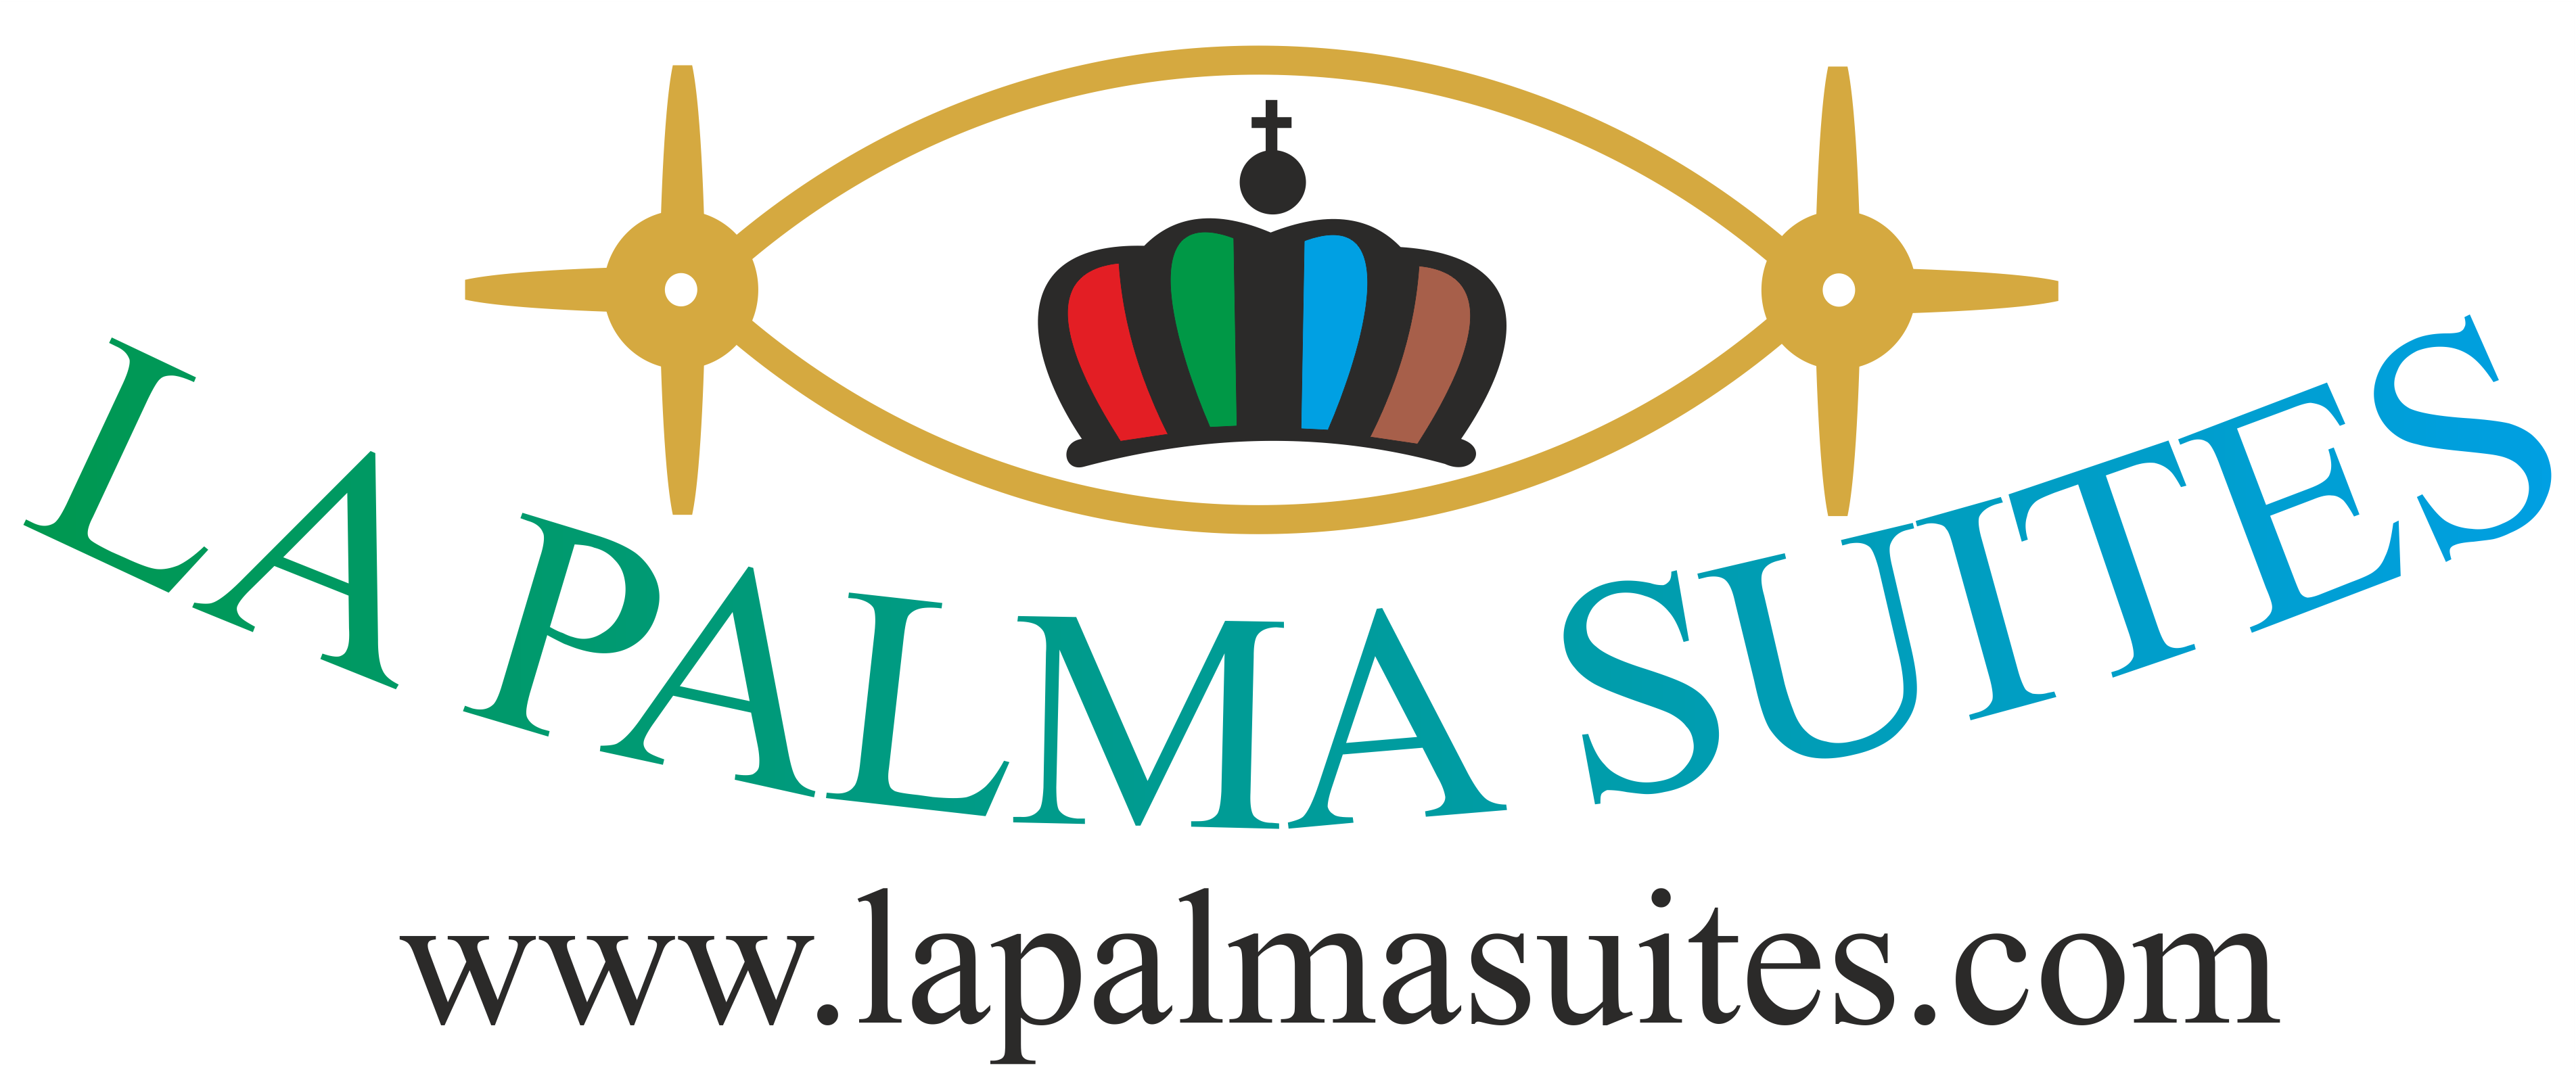 Lapalmasuites.com